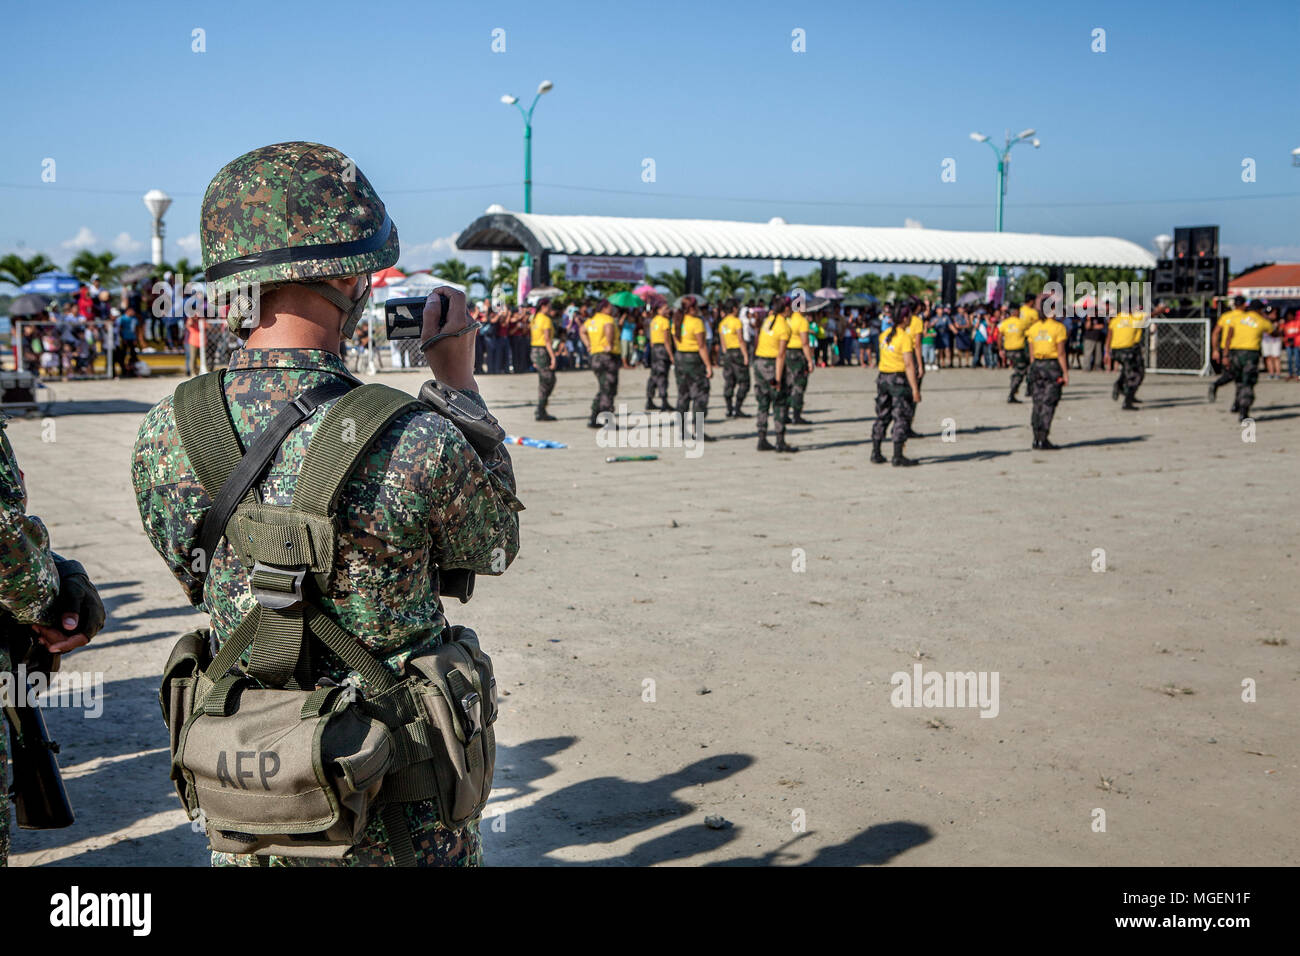 Ein Mitglied der Streitkräfte der Philippinen, AFP, nimmt Bilder in der jährlichen Tanzwettbewerb in Puerto Princesa, Palawan, Philippinen. Stockfoto